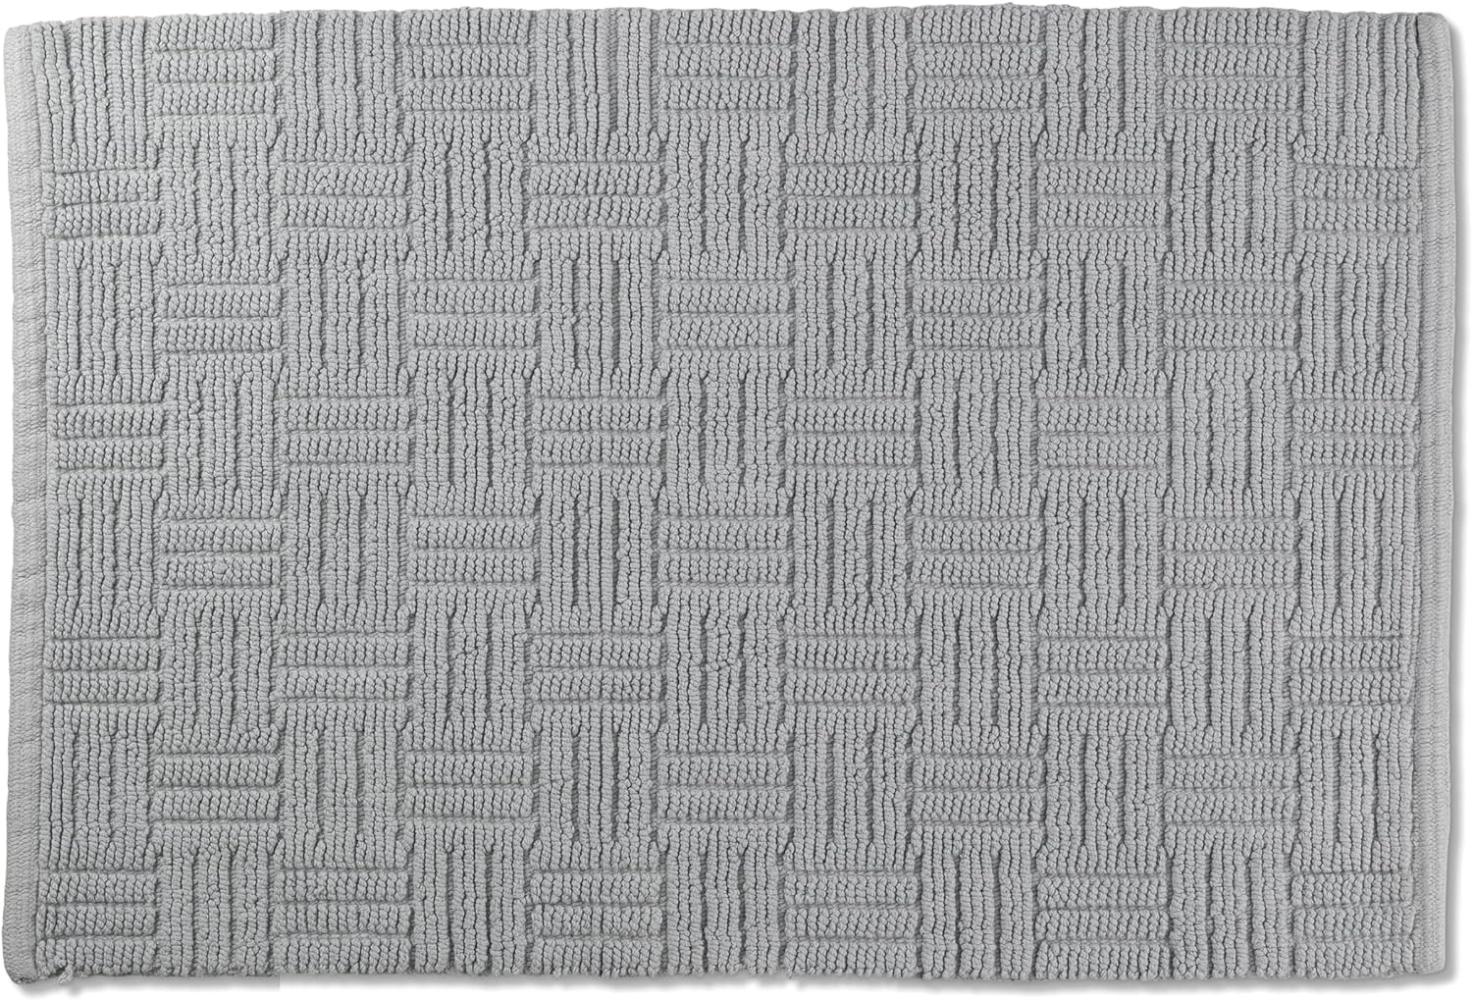 kela Badematte Leana, 100 cm x 60 cm, 100% Baumwolle, felsgrau, rutschhemmend, waschbar bei 30° C, für Fußbodenheizung geeignet, 23522 Bild 1